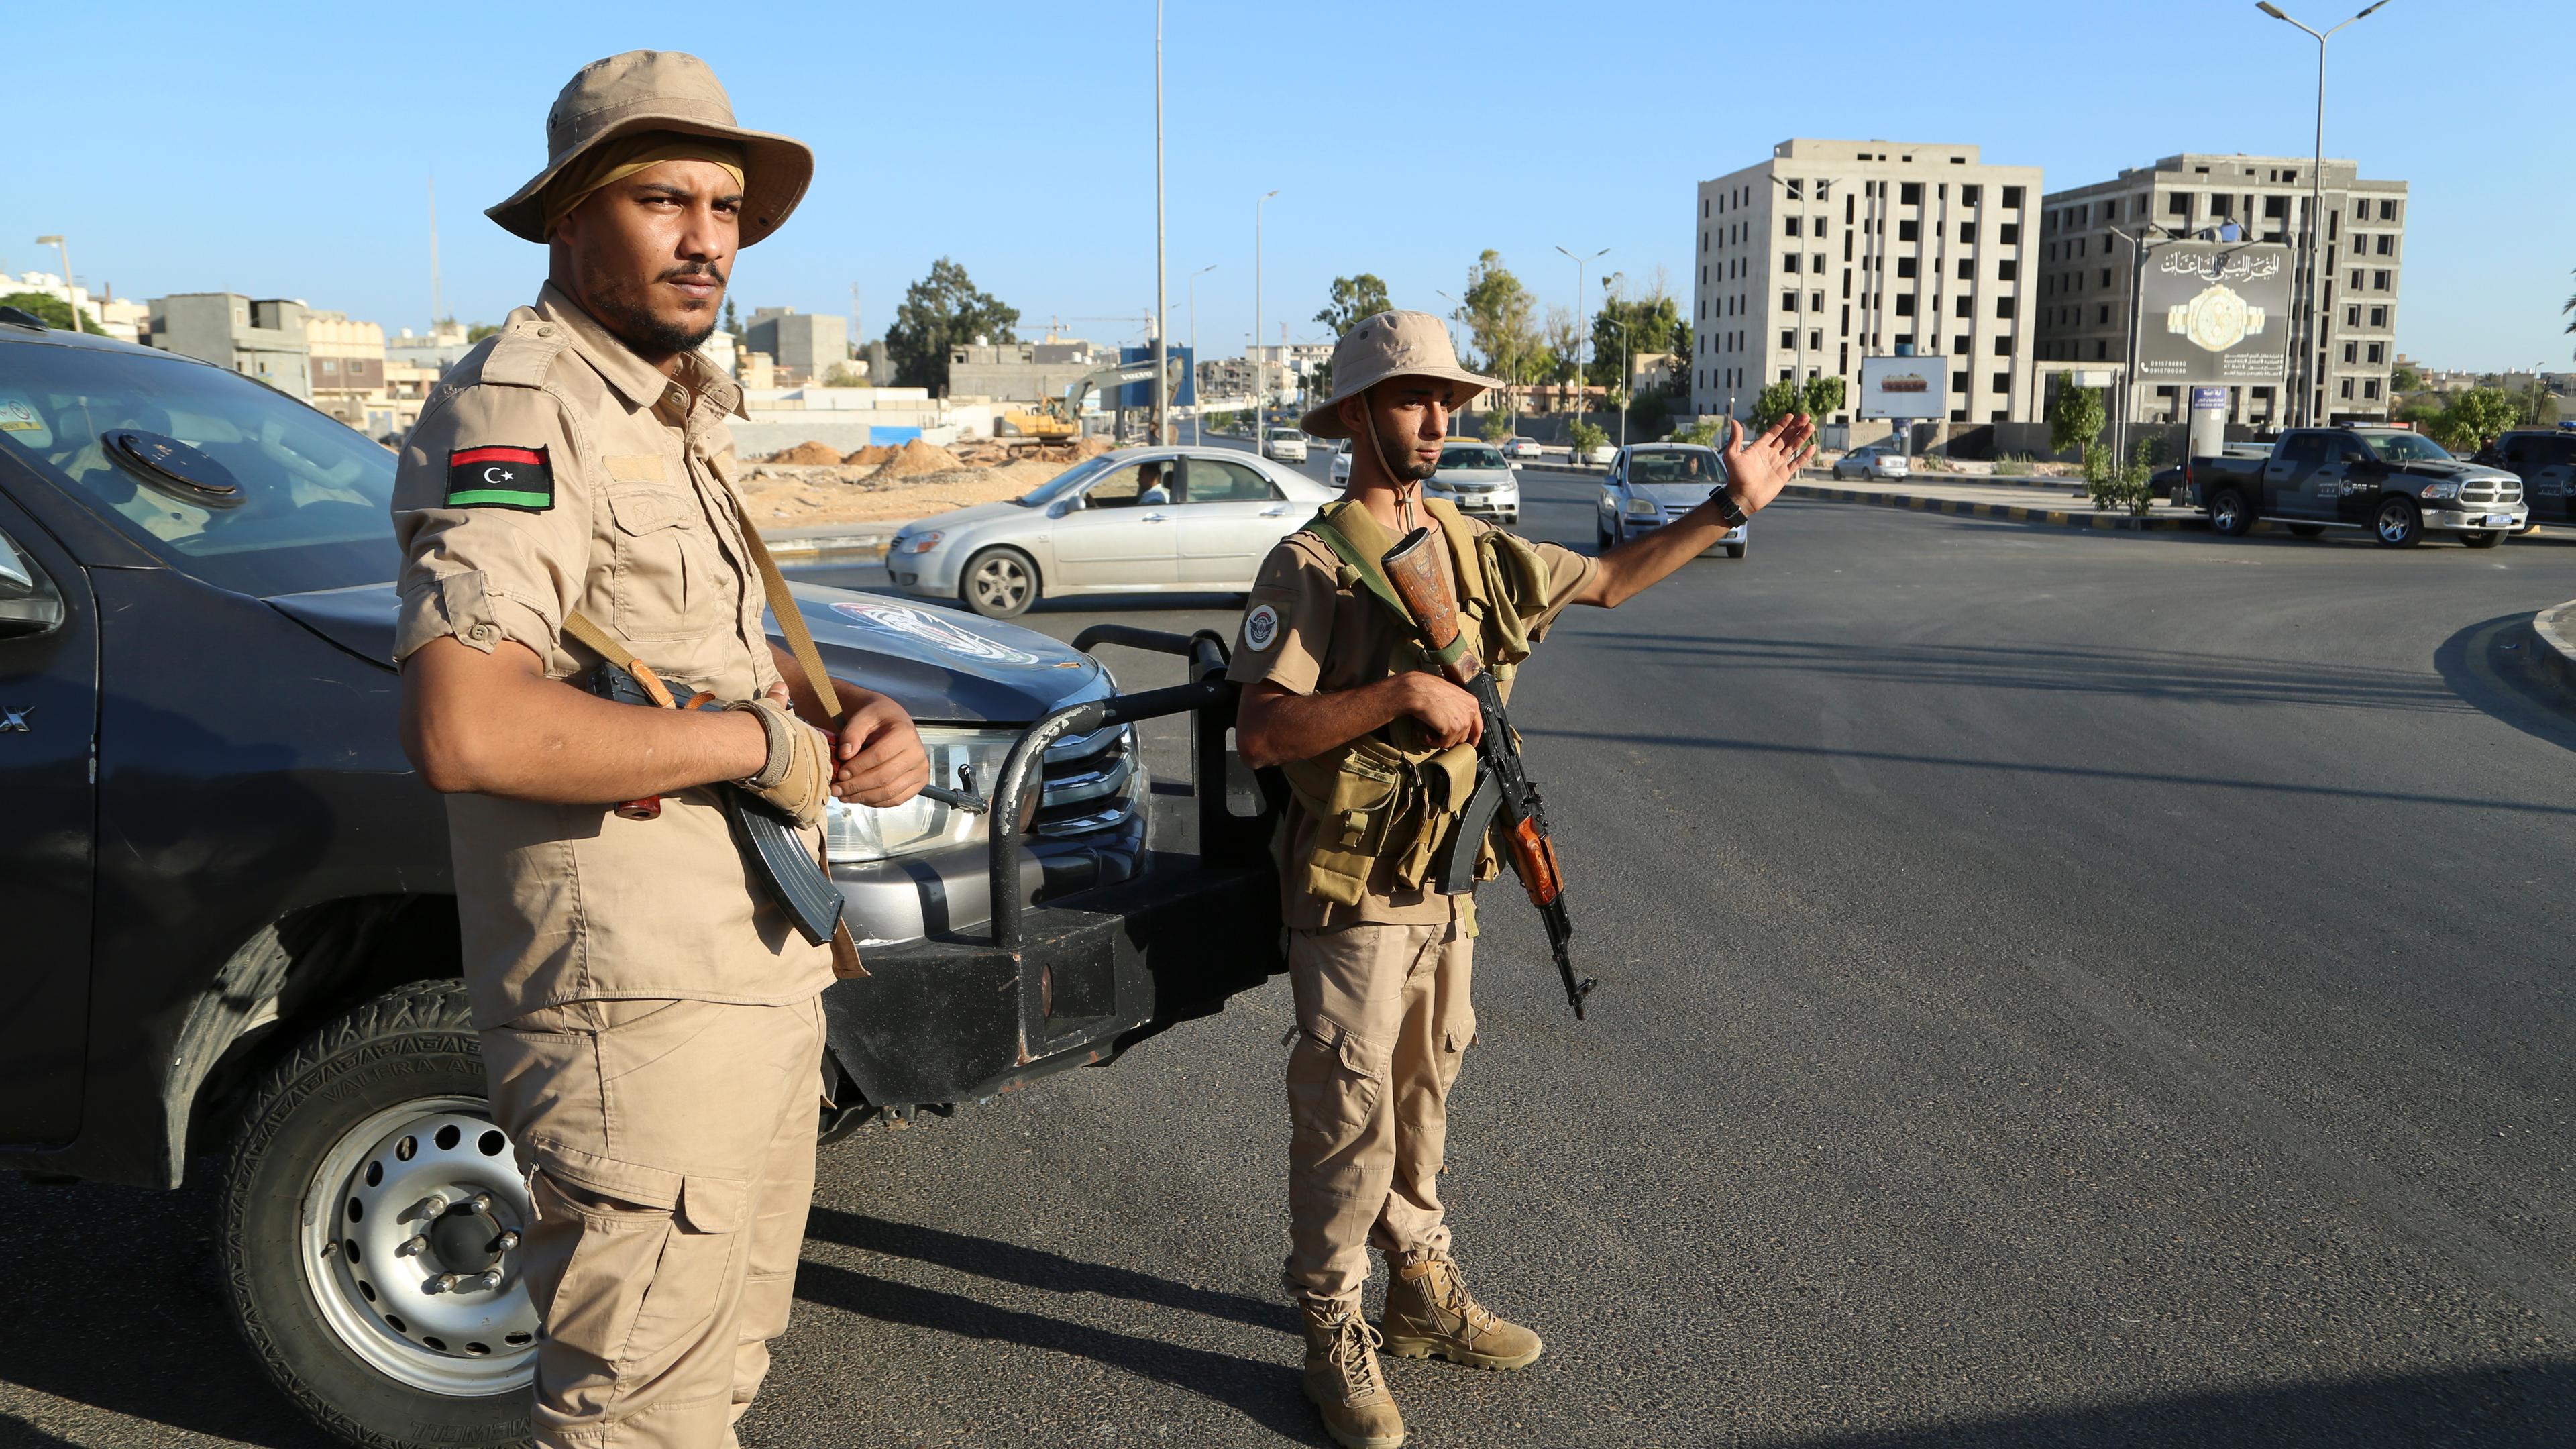 Mitglieder einer Sicherheitseinheit stehen Wache. In Libyen haben sich verfeindete Milizen in der Hauptstadt Tripolis die schwersten Kämpfe seit Monaten geliefert, nachdem eine Miliz den Kommandeur der sogenannten 444. Brigade festnahm. Der Flugverkehr am Flughafen der Hauptstadt und der Unterricht an der Universität wurden vorübergehend ausgesetzt.